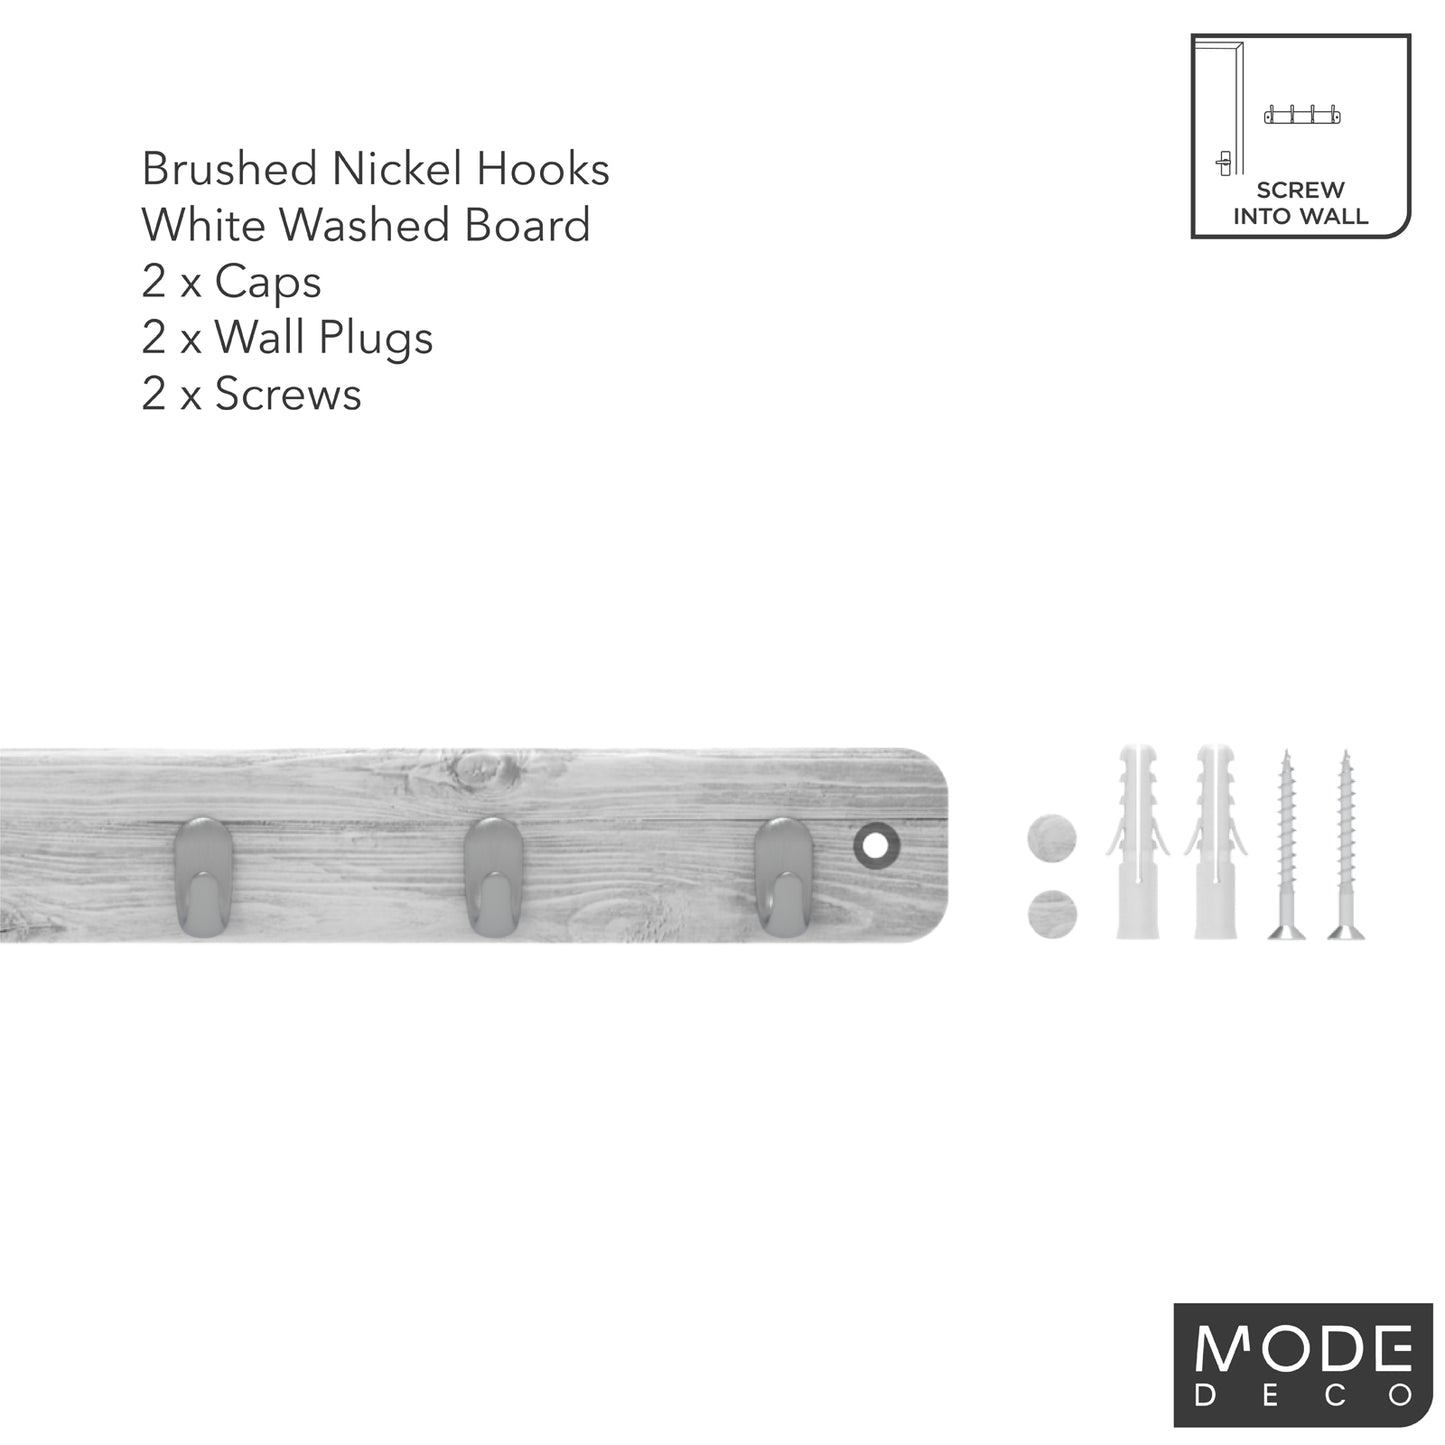 7 Brushed Nickel Hooks on White Wash Board Key Rack